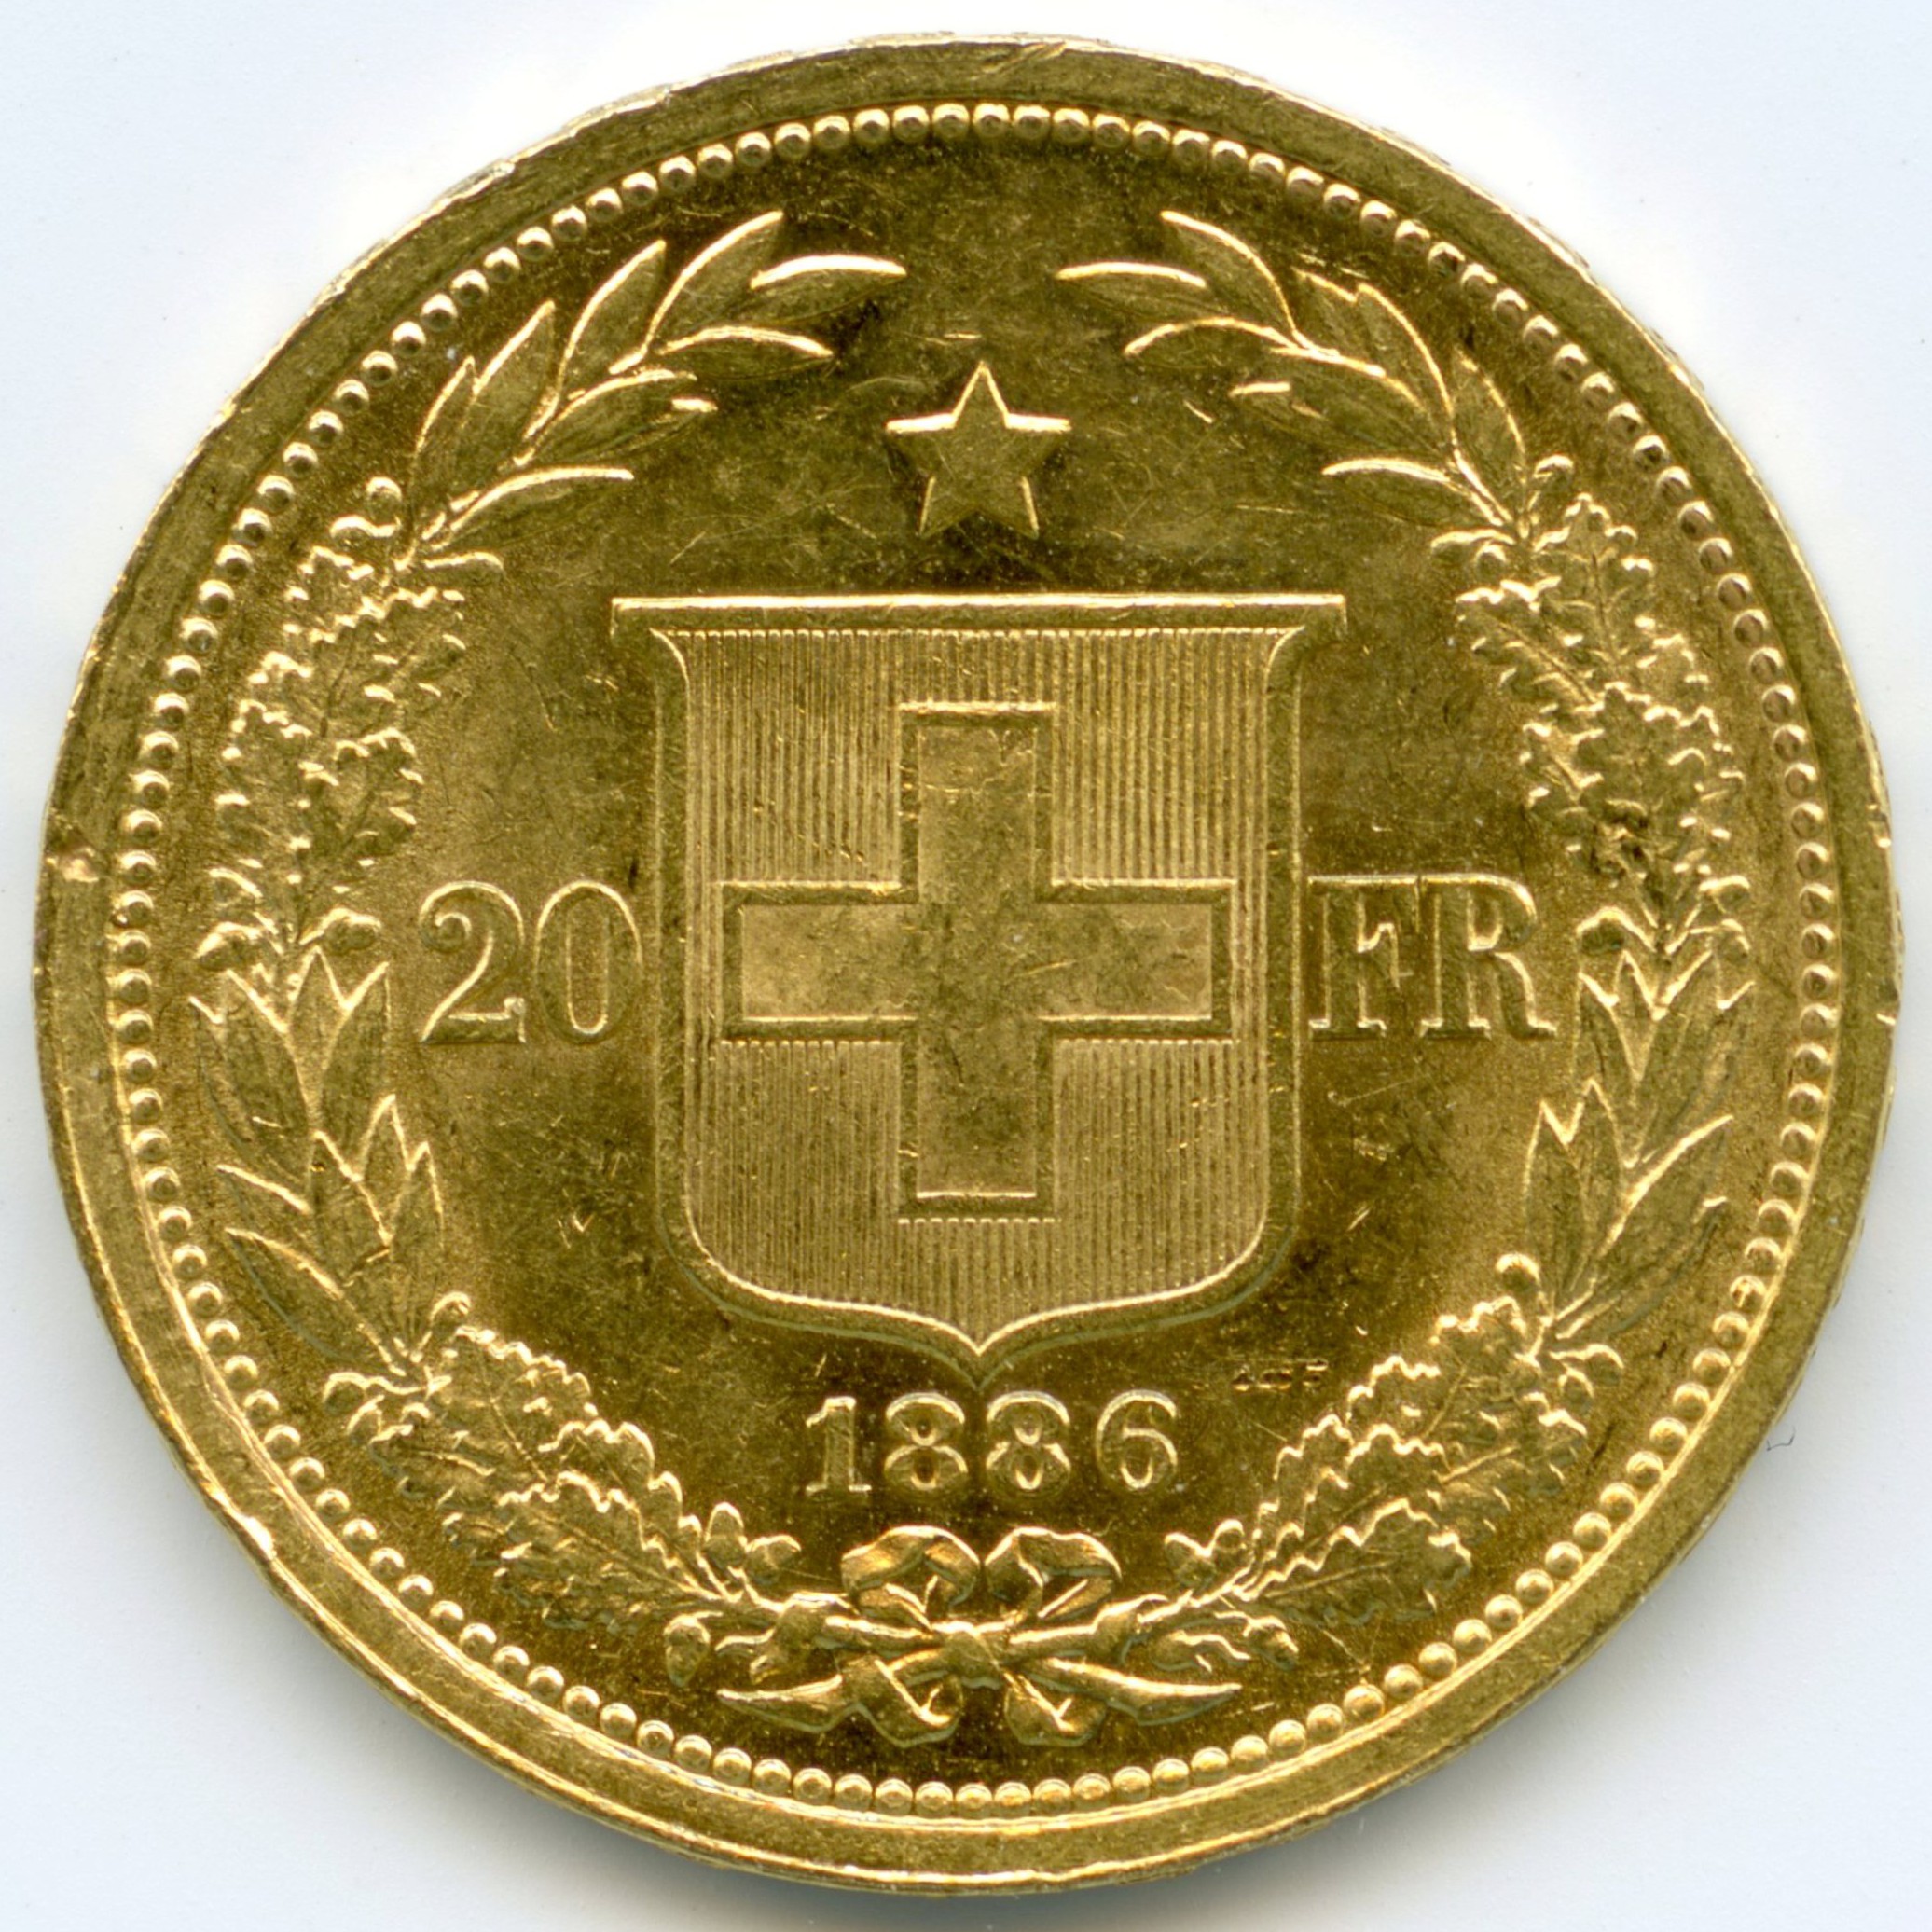 Suisse - 20 francs - 1886 B revers